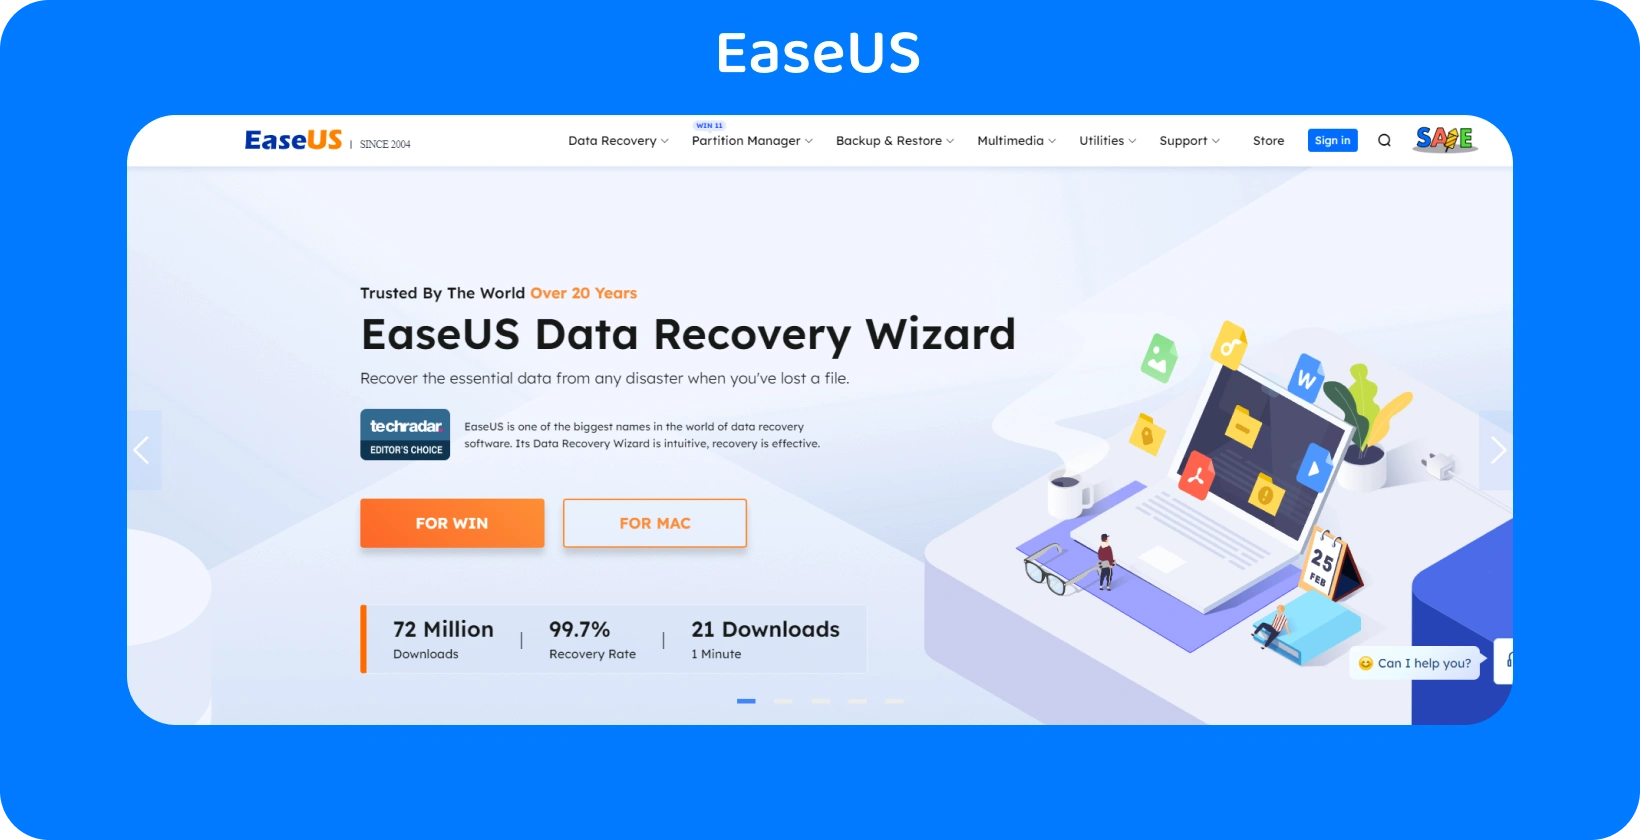 EaseUS página do Data Recovery Wizard, oferecendo uma solução confiável para restaurar dados perdidos com uma alta taxa de recuperação.